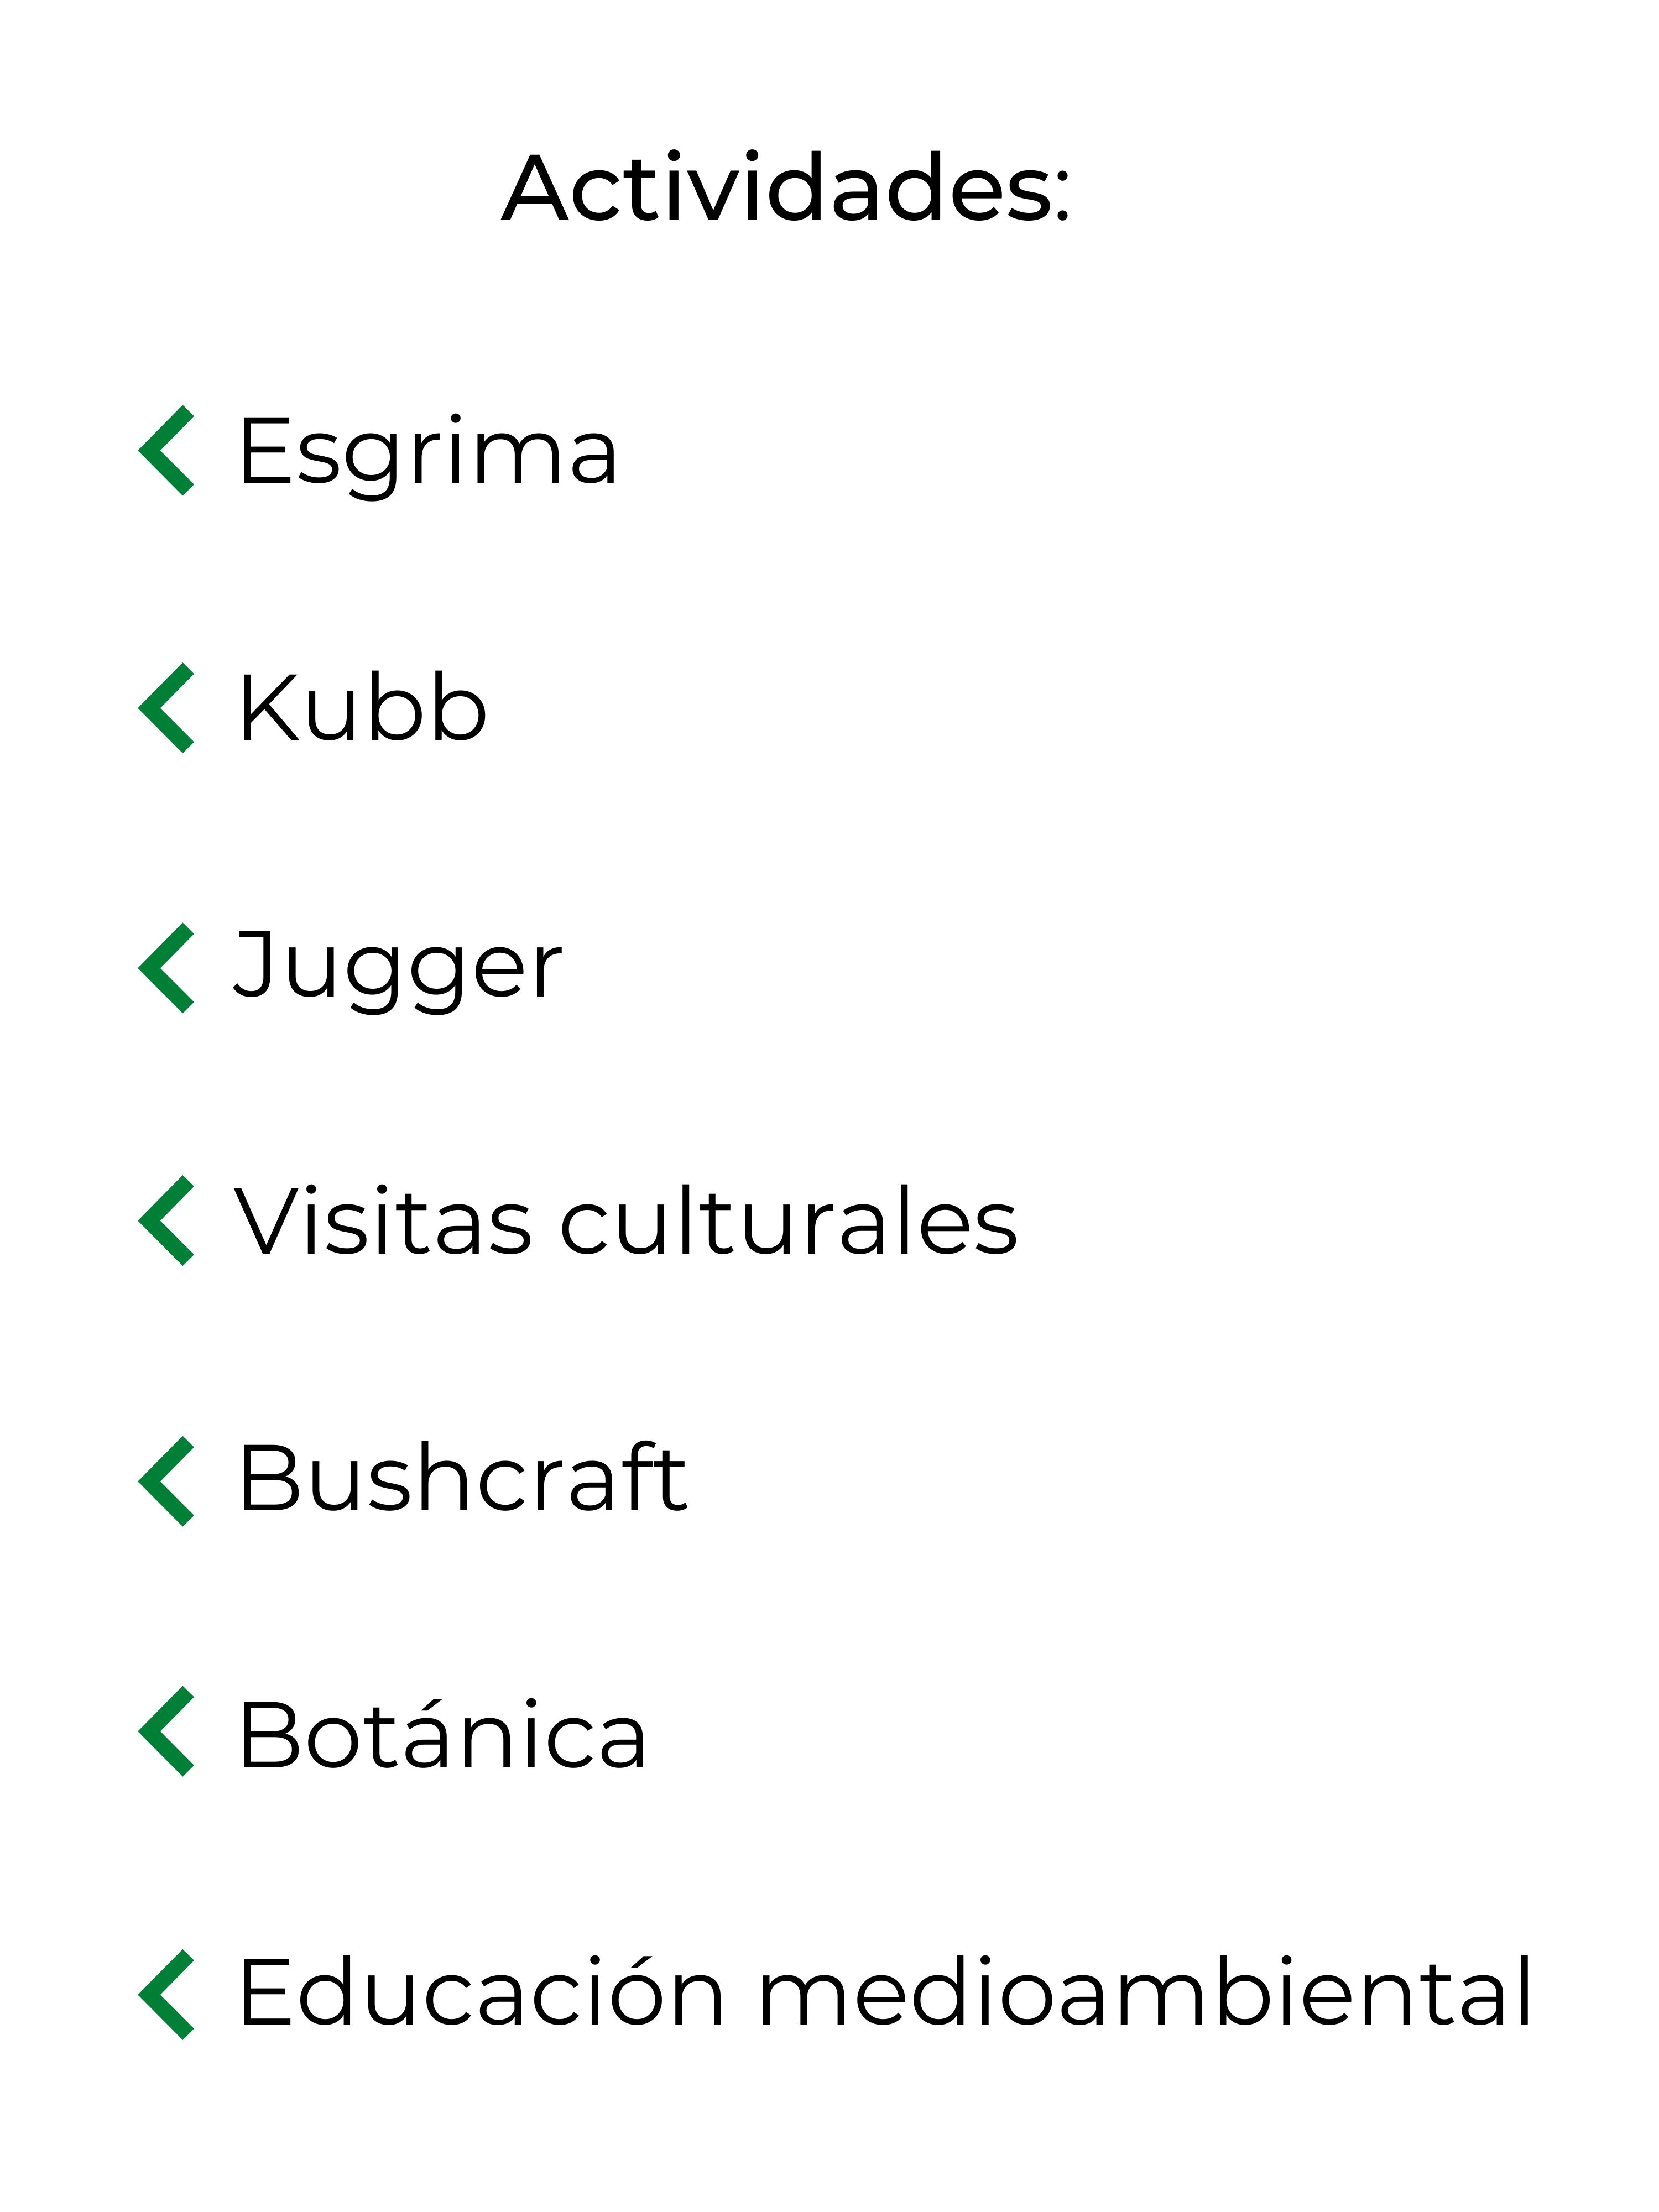 Esgrima Kubb Jugger Visitas culturales Bushcraft Botánica Educación medioambiental (1)